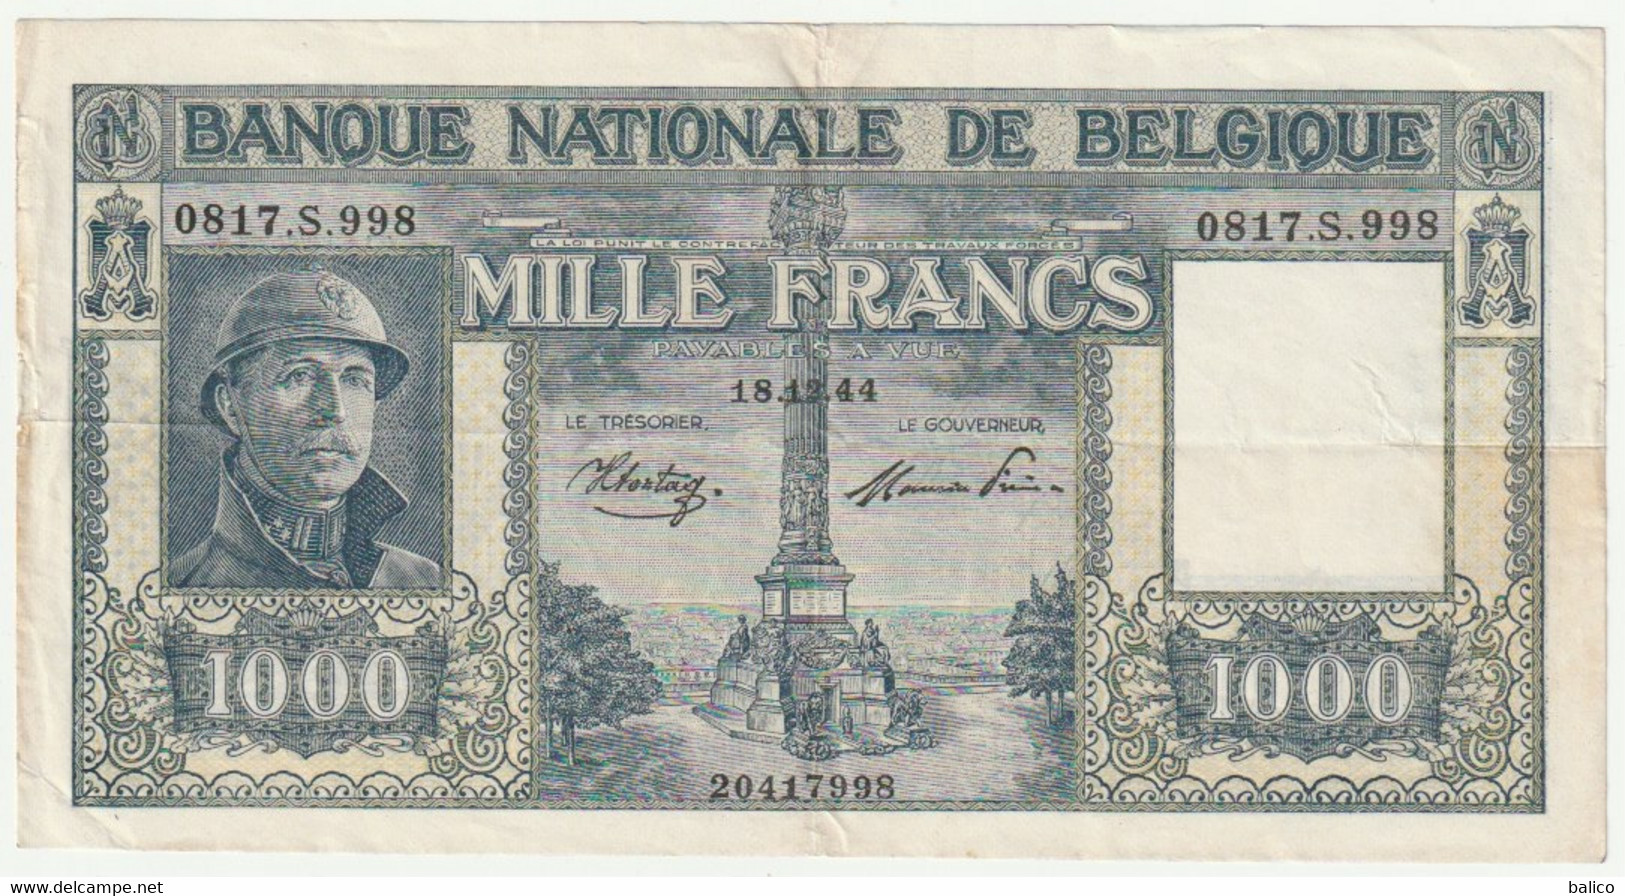 Banque Nationale De Belgique - Mille Francs 18/12/44 - N° 0817.S.998 - 1000 Francs  (très Rare) 20417998 - [ 9] Collections